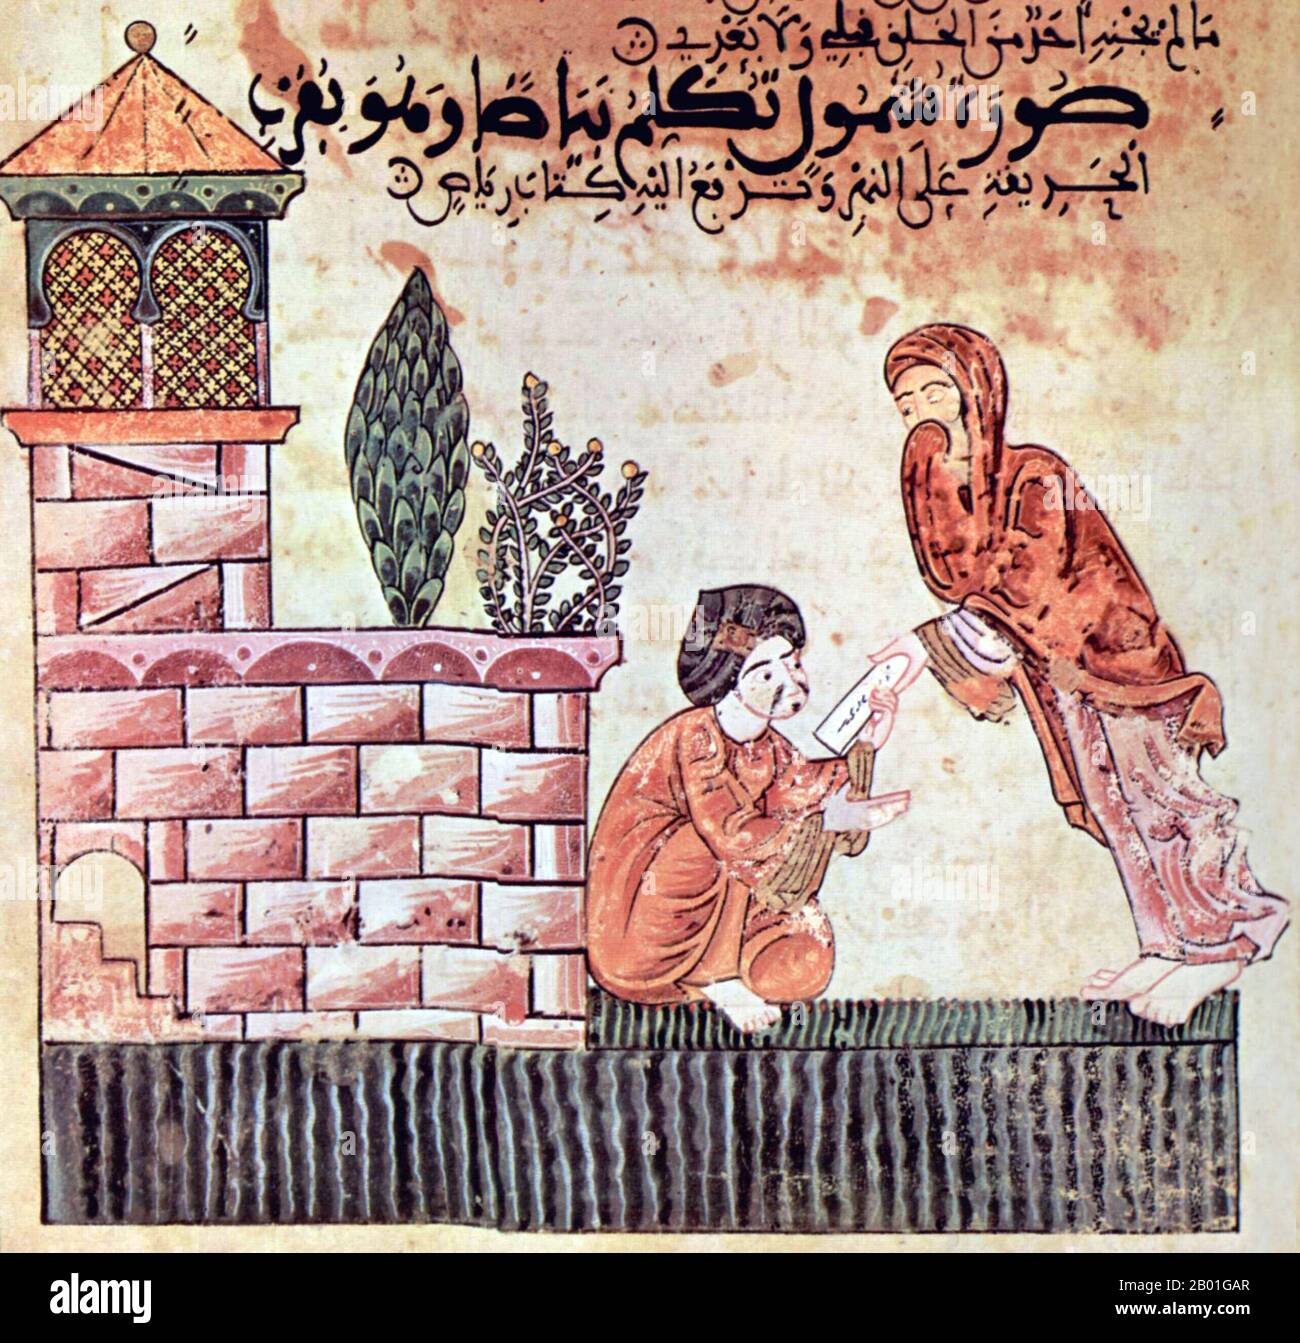 Espagne : une illustration de la Tale de Bayad et Riyad, Al-Andalus (Andalousie islamique), fin 12th siècle. Le Hadith Bayāḍ wa Riyāḍ (l'histoire de Bayad et Riyad) ou Qissat Bayad wa Riyad est une histoire d'amour arabe de 13th ans. Les personnages principaux de l'histoire sont Bayad, fils d'un marchand et étranger de Damas, et Riyad, une fille instruite dans la cour d'un Hajib (vizier/ministre) sans nom d'Irak et une 'Dame' (al-sayyida). Le Hadith Bayad wa Riyad est considéré comme le seul manuscrit illustré connu pour avoir survécu à plus de huit siècles de présence musulmane en Espagne. Banque D'Images